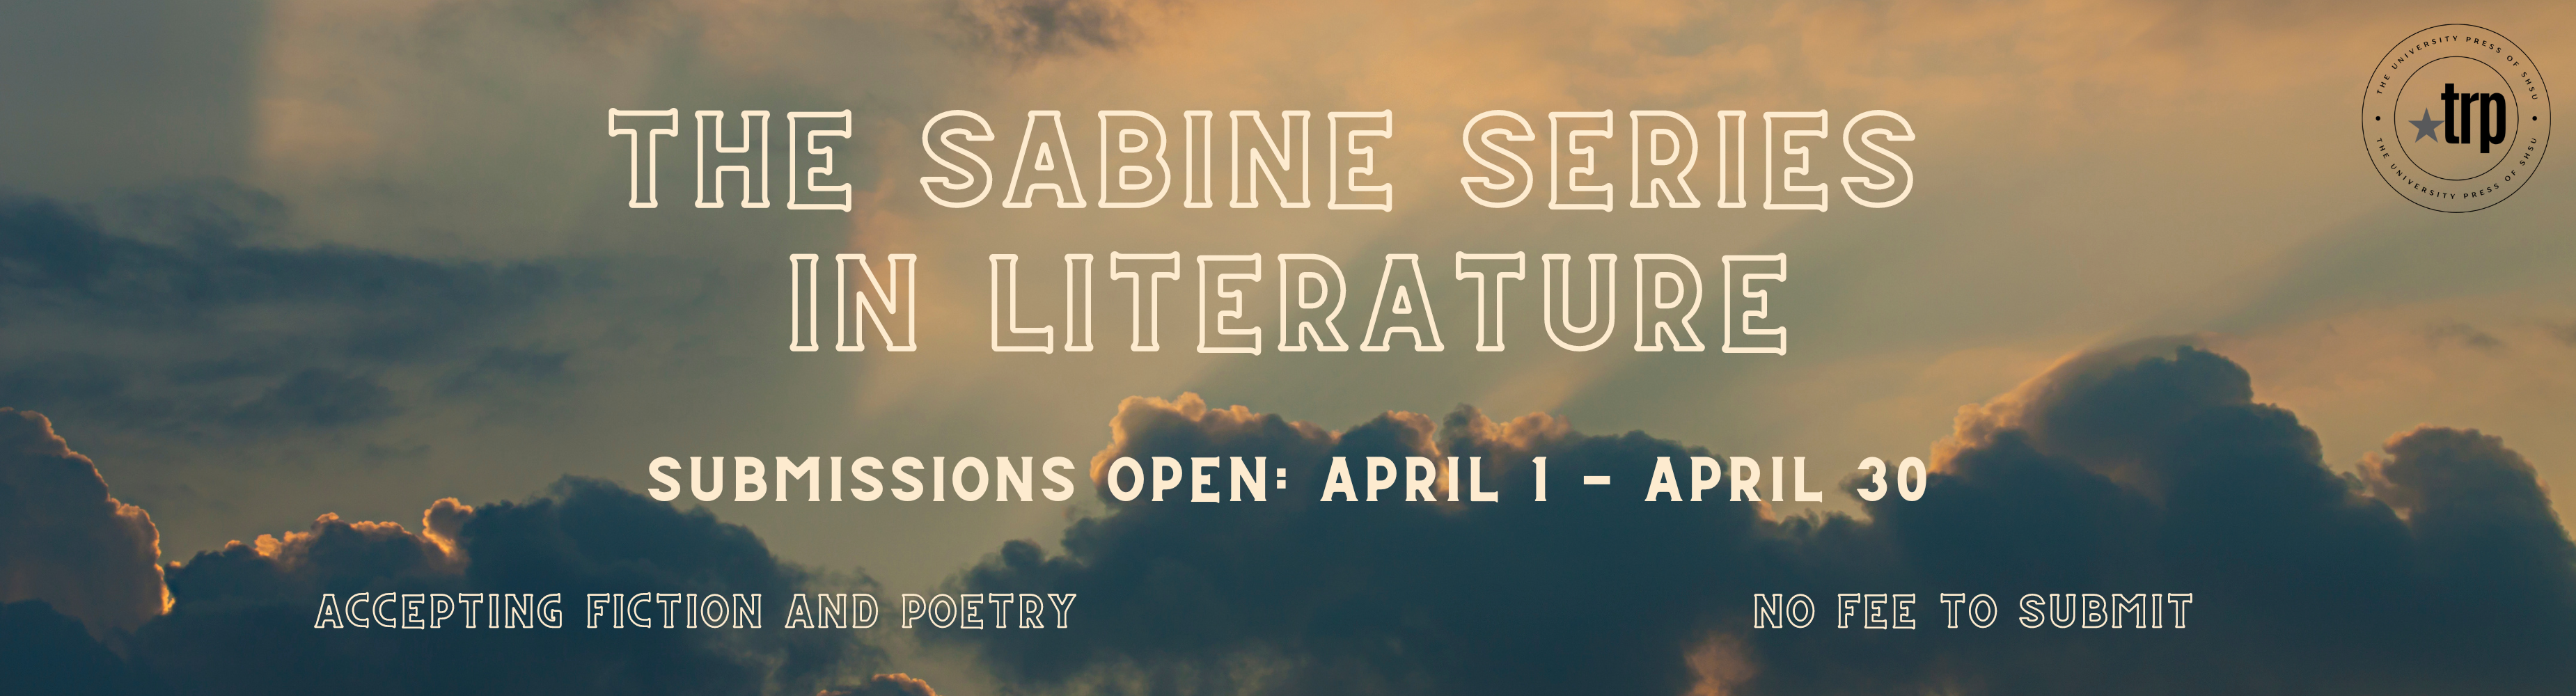 Website Banner - The Sabine Series in Literature